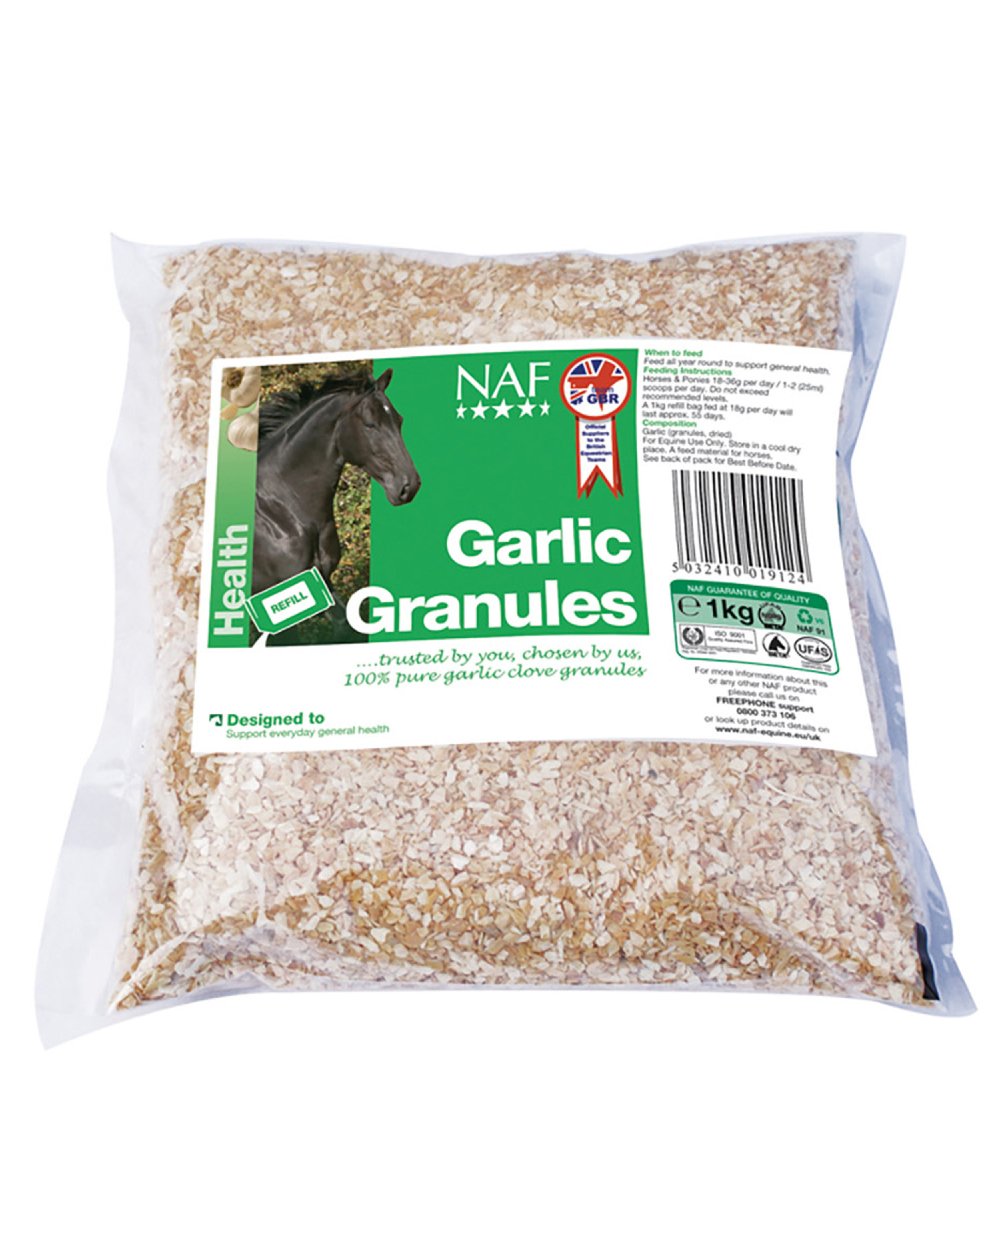 NAF Garlic Granules 1kg on white background